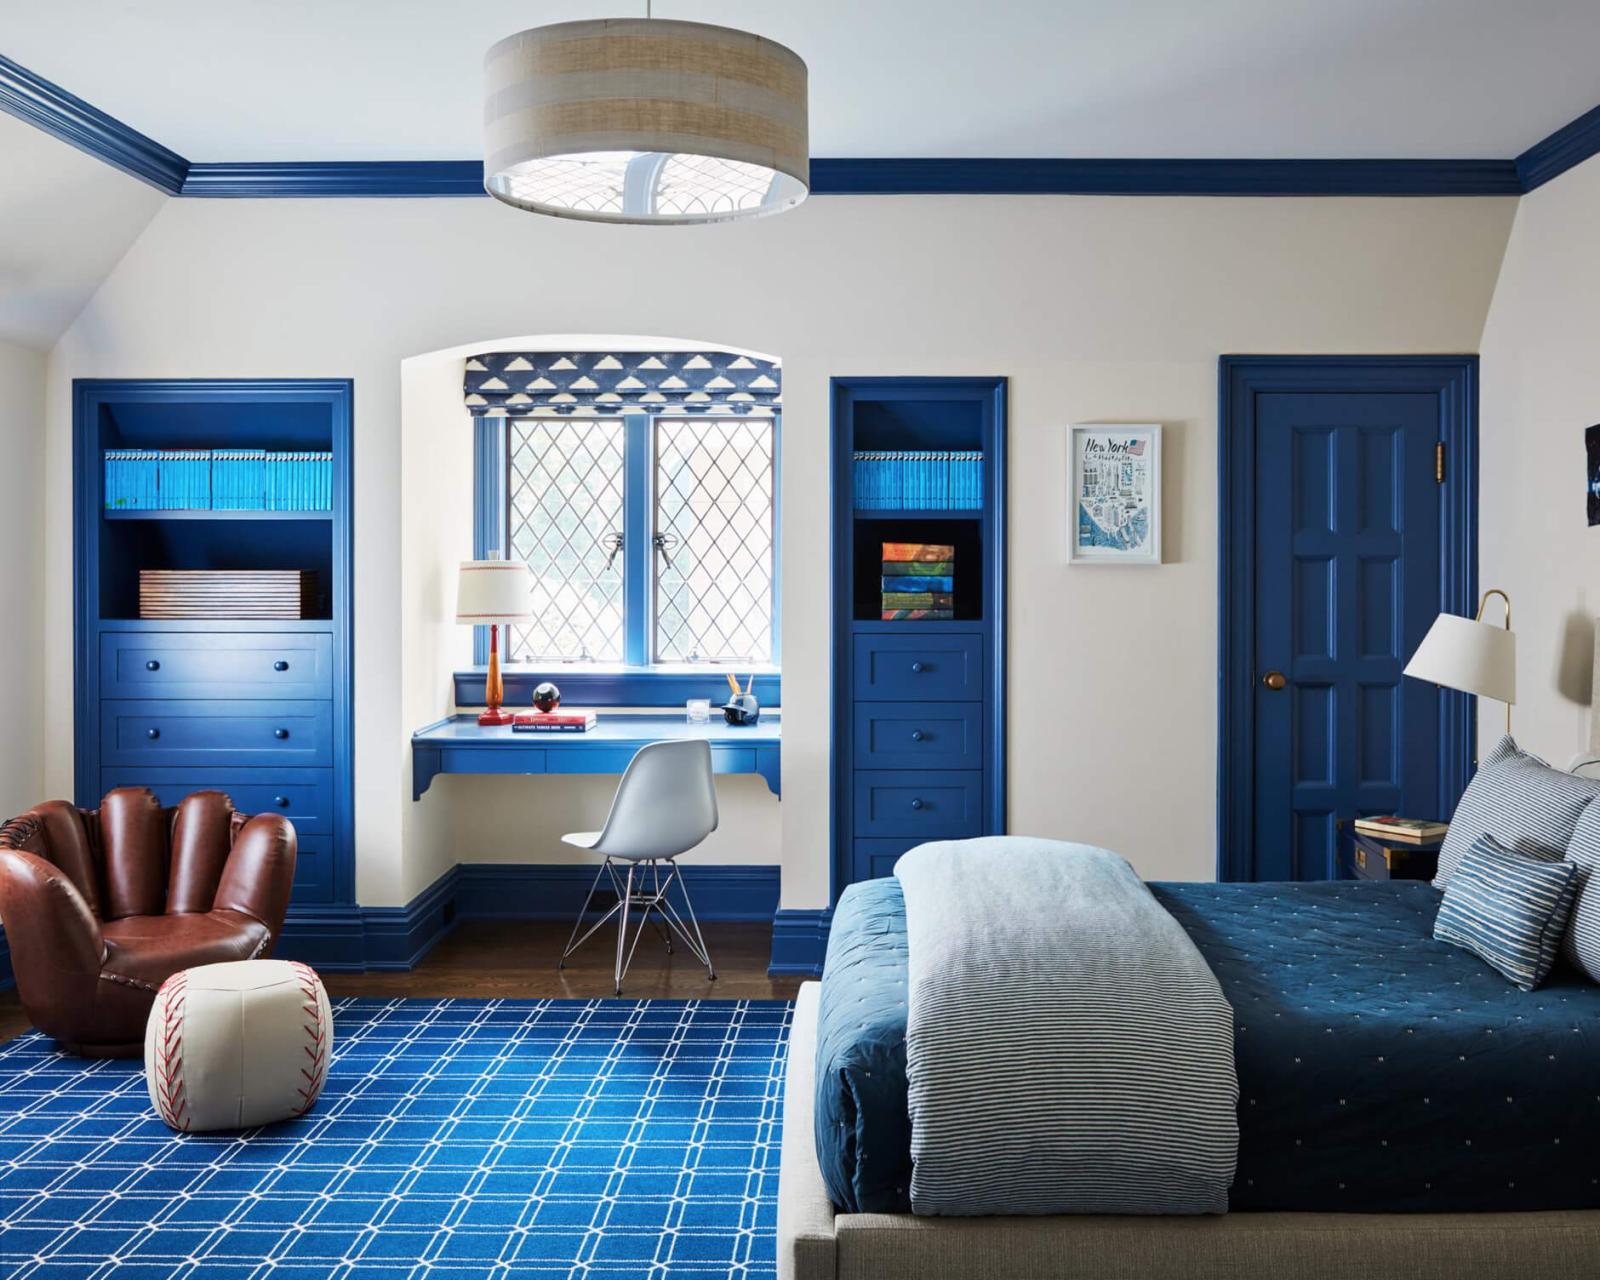 Phòng ngủ con trai ấn tượng với những đường kẻ sọc khỏe khoắn chấm phá hài hòa trên nền xanh pastel. Sự cách điệu của kệ sách cũng tạo nên nét mới lạ cho căn phòng.